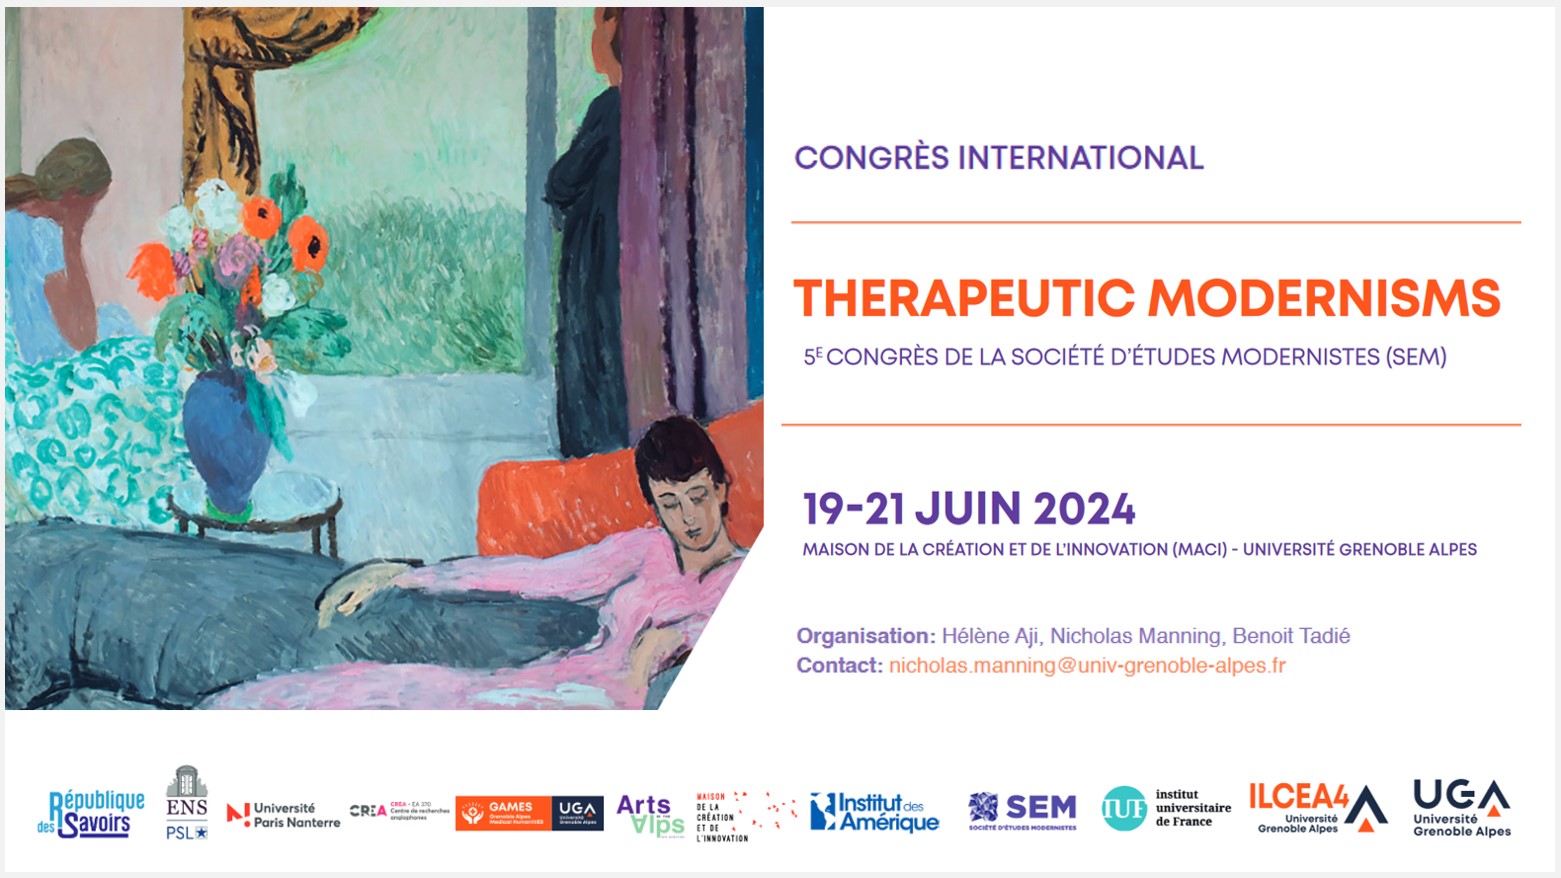 Therapeutic Modernisms - 5e congrès de la société d'études modernistes (SEM)